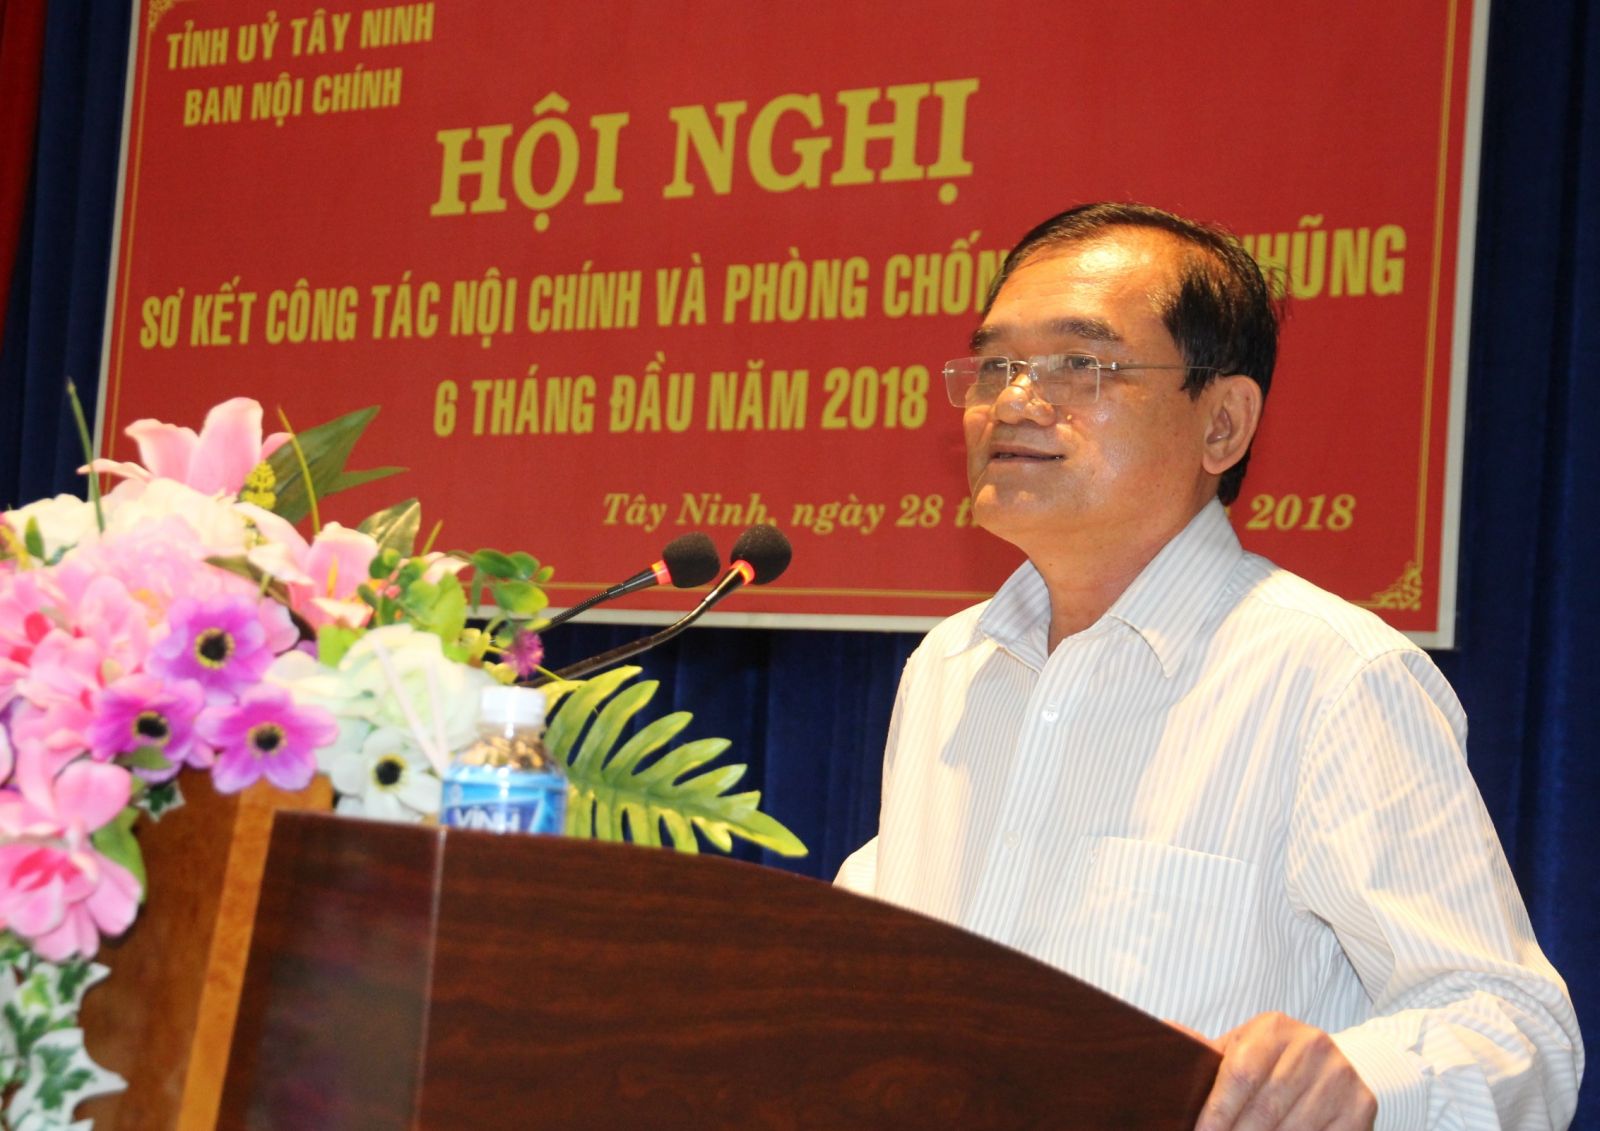 Đồng chí Nguyễn Minh Tân, Phó Bí thư thường trực Tỉnh ủy Tây Ninh phát biểu chỉ đạo Hội nghị